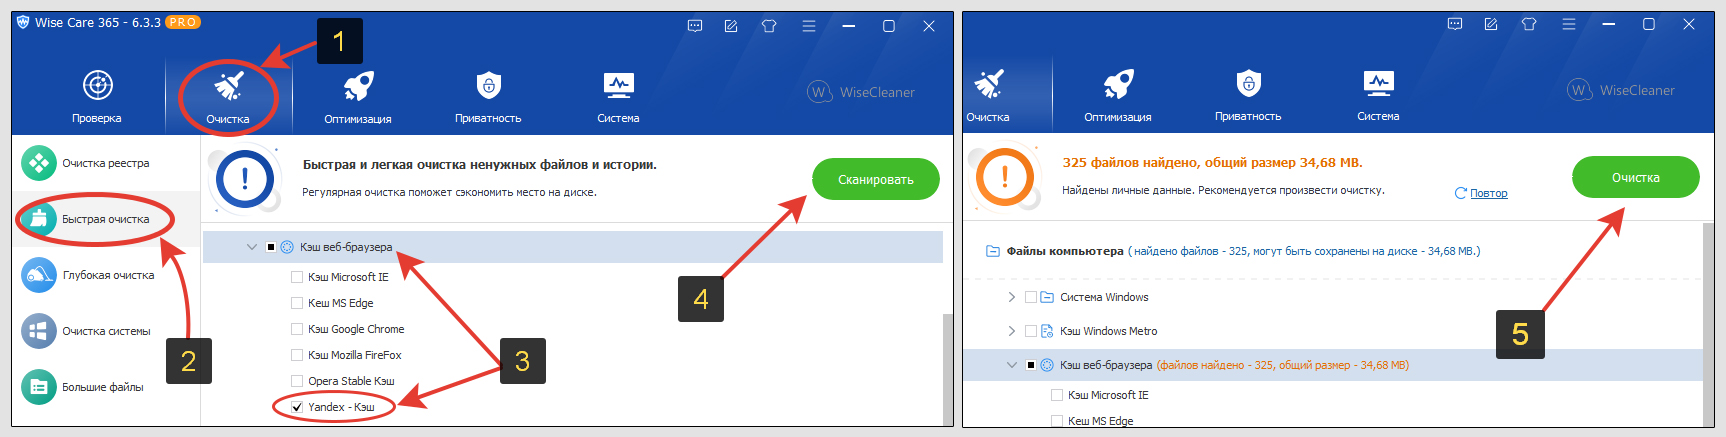 5 шагов по очистке кэша Яндекс браузера в интерфейсе программы Wise Care для компьютера Windows.